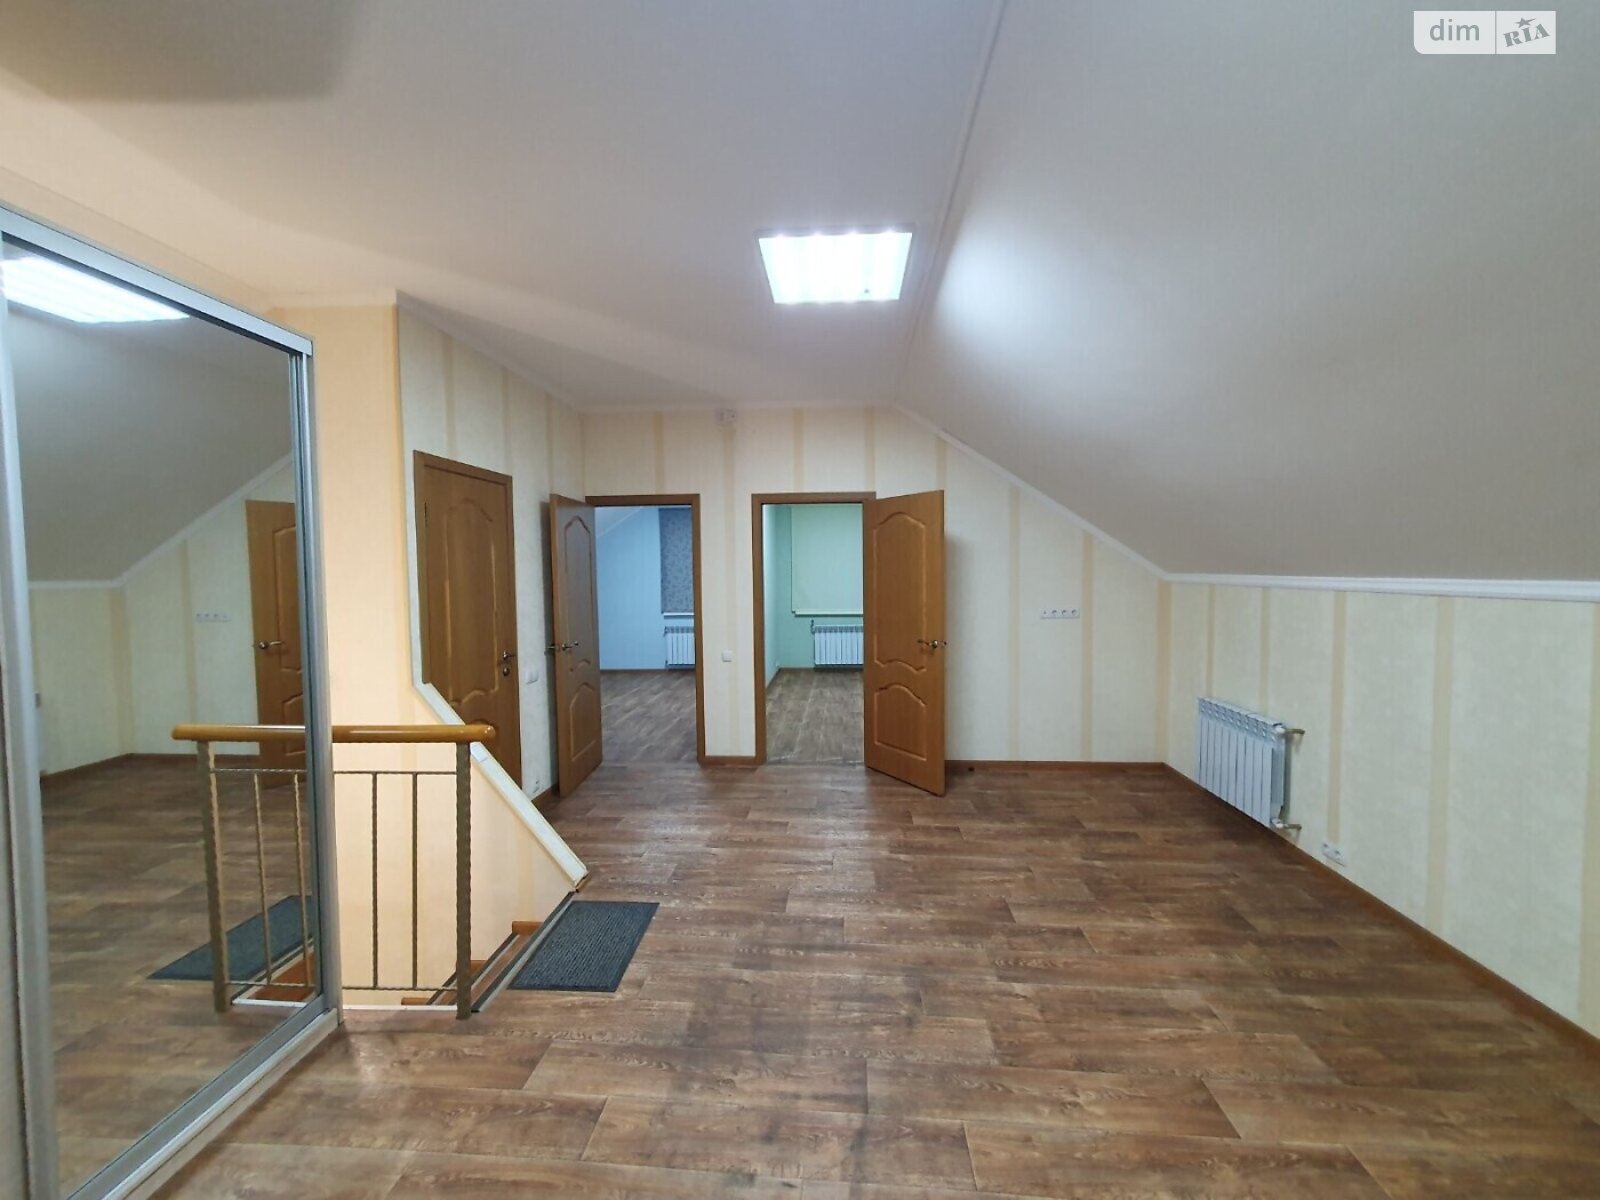 Аренда офисного помещения в Киеве, Академика Туполева улица 19, помещений - 3, этаж - 2 фото 1